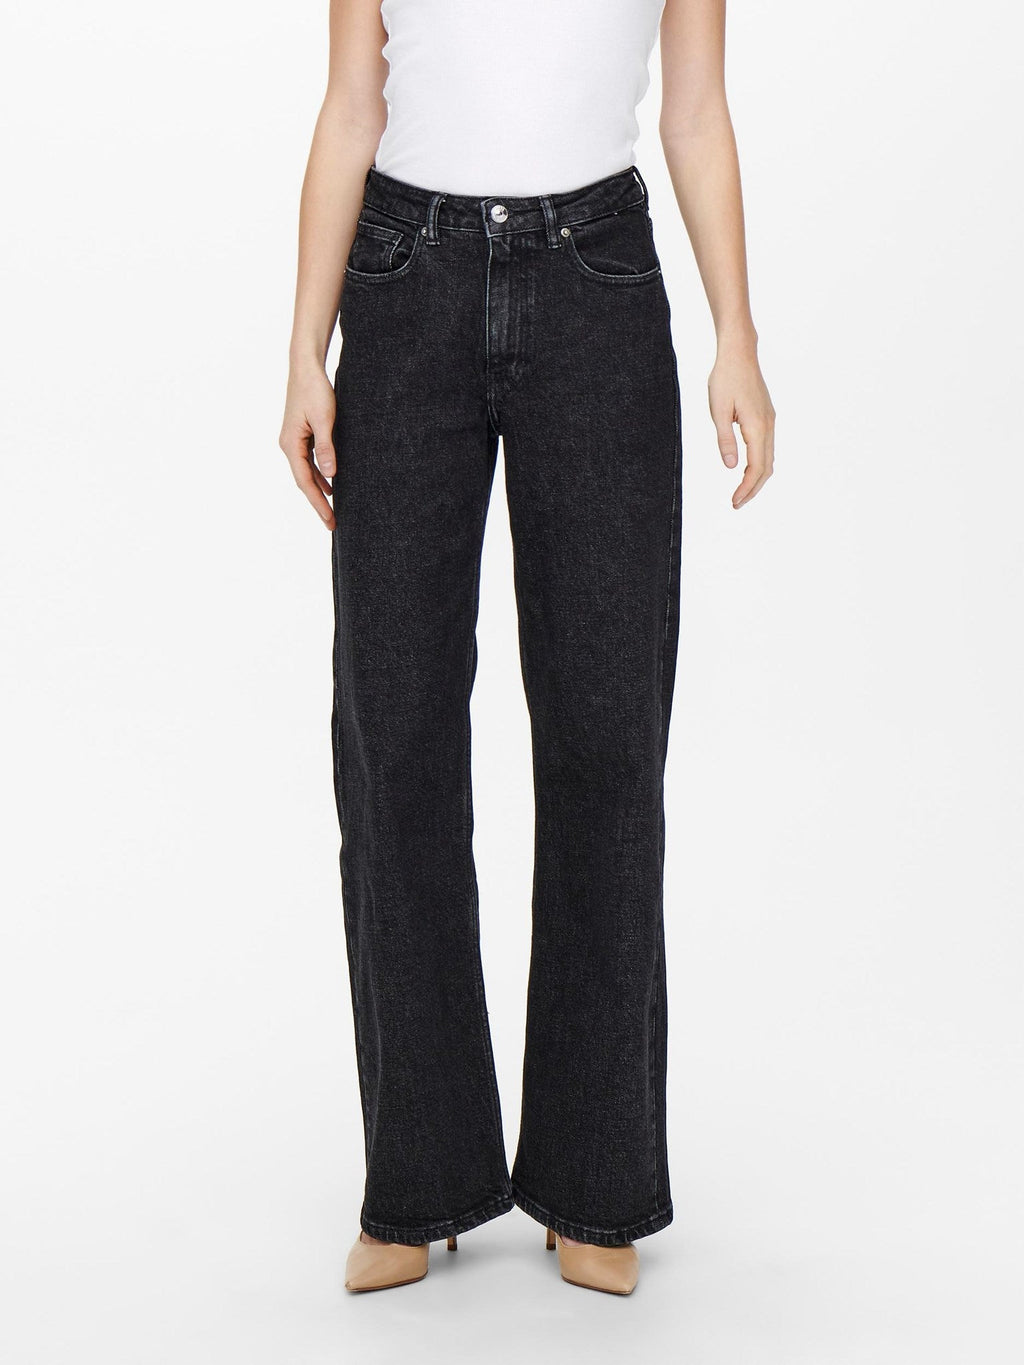 Juicy Jeans (weites Bein) - schwarzer Jeans